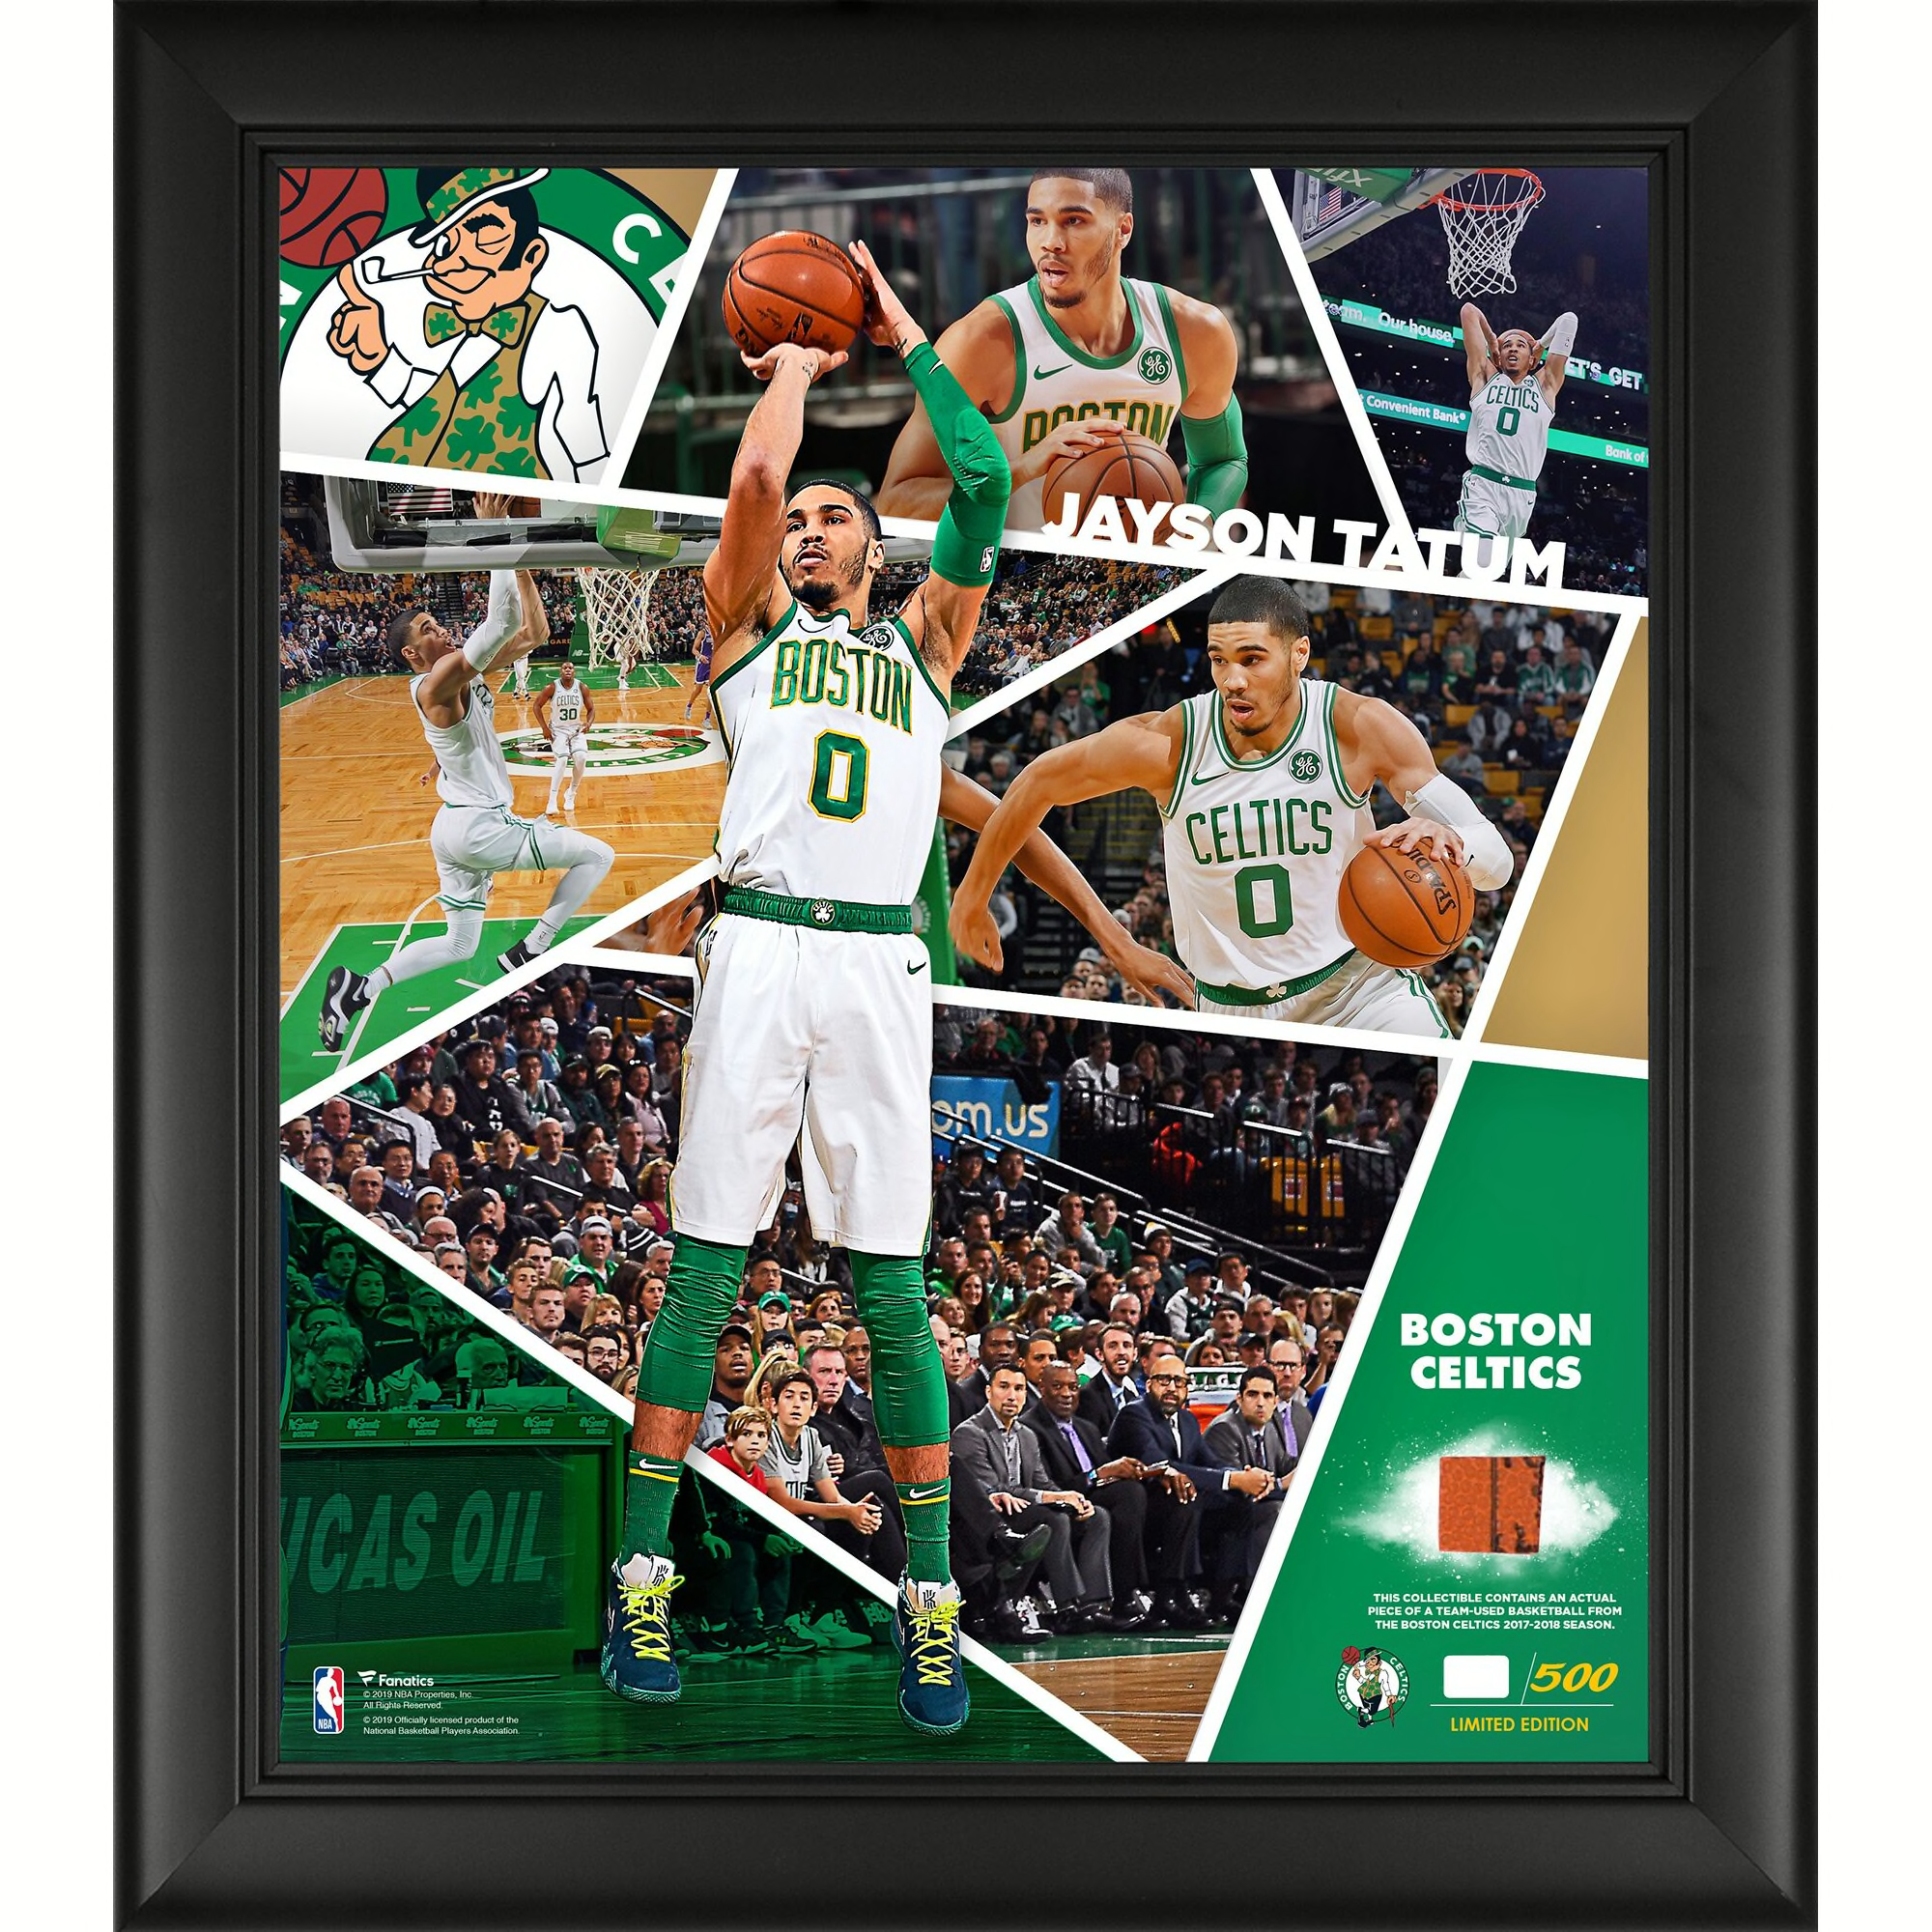 Upgrade your fan cave with Boston Celtics memorabilia